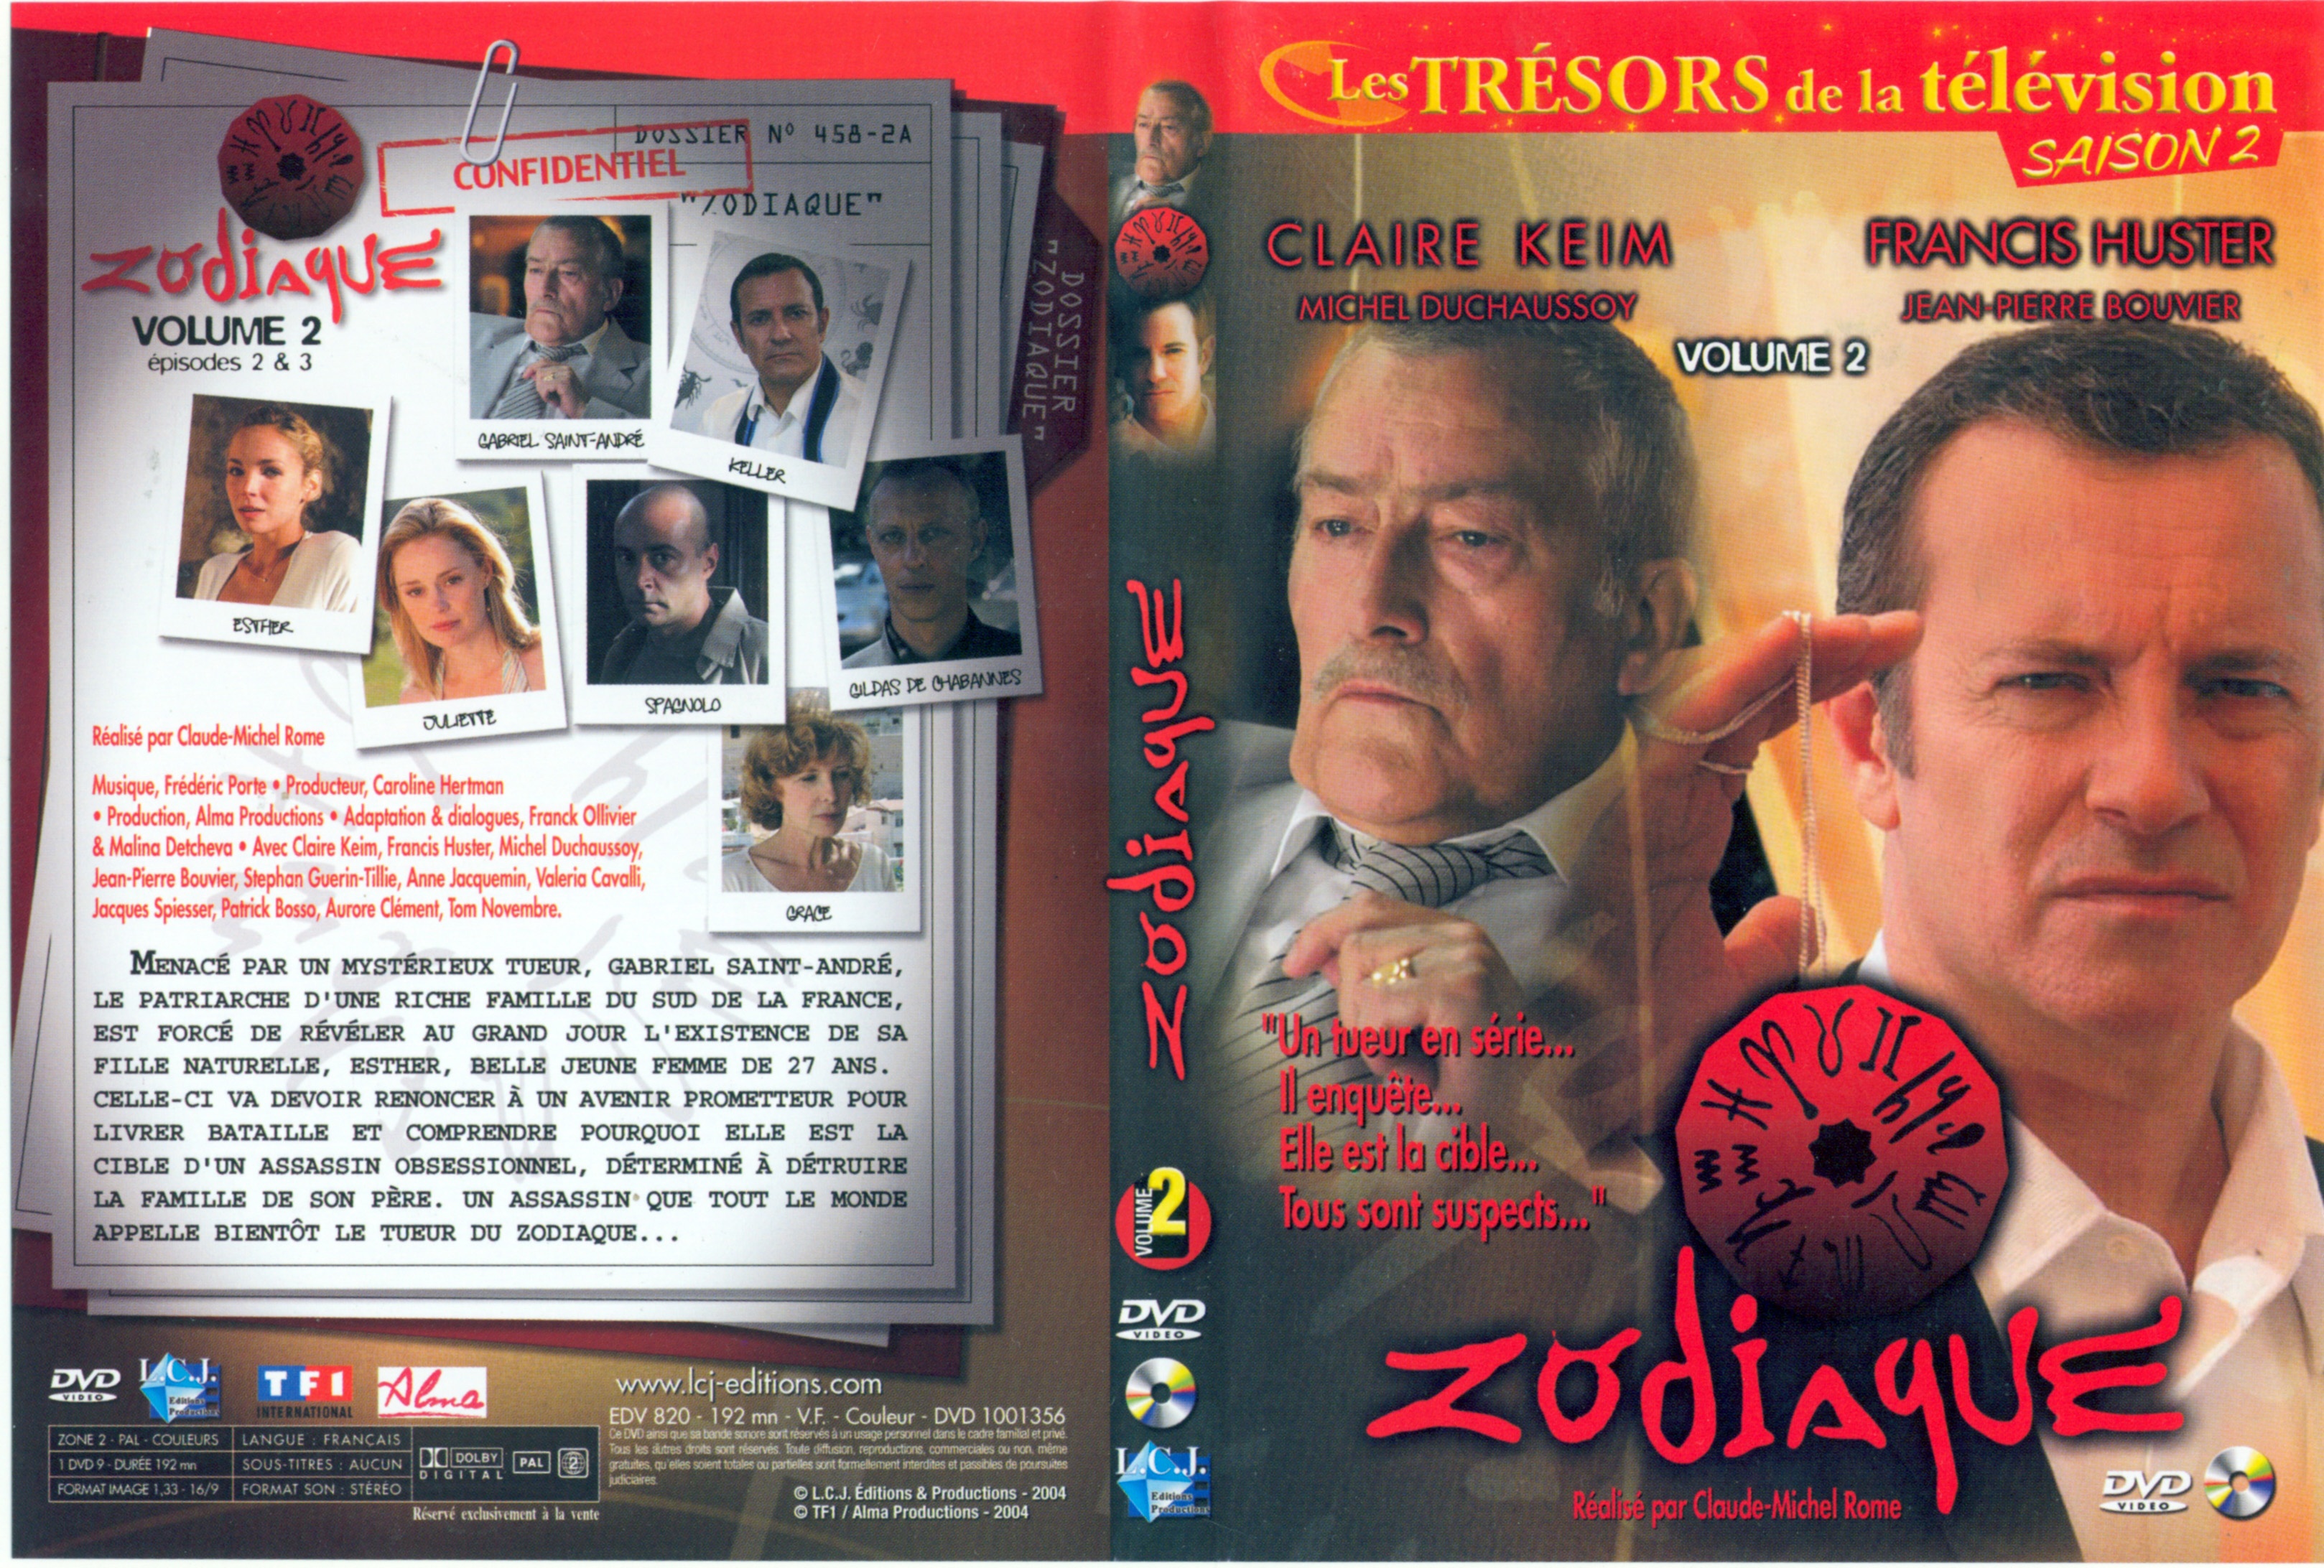 Jaquette DVD Zodiaque vol 2